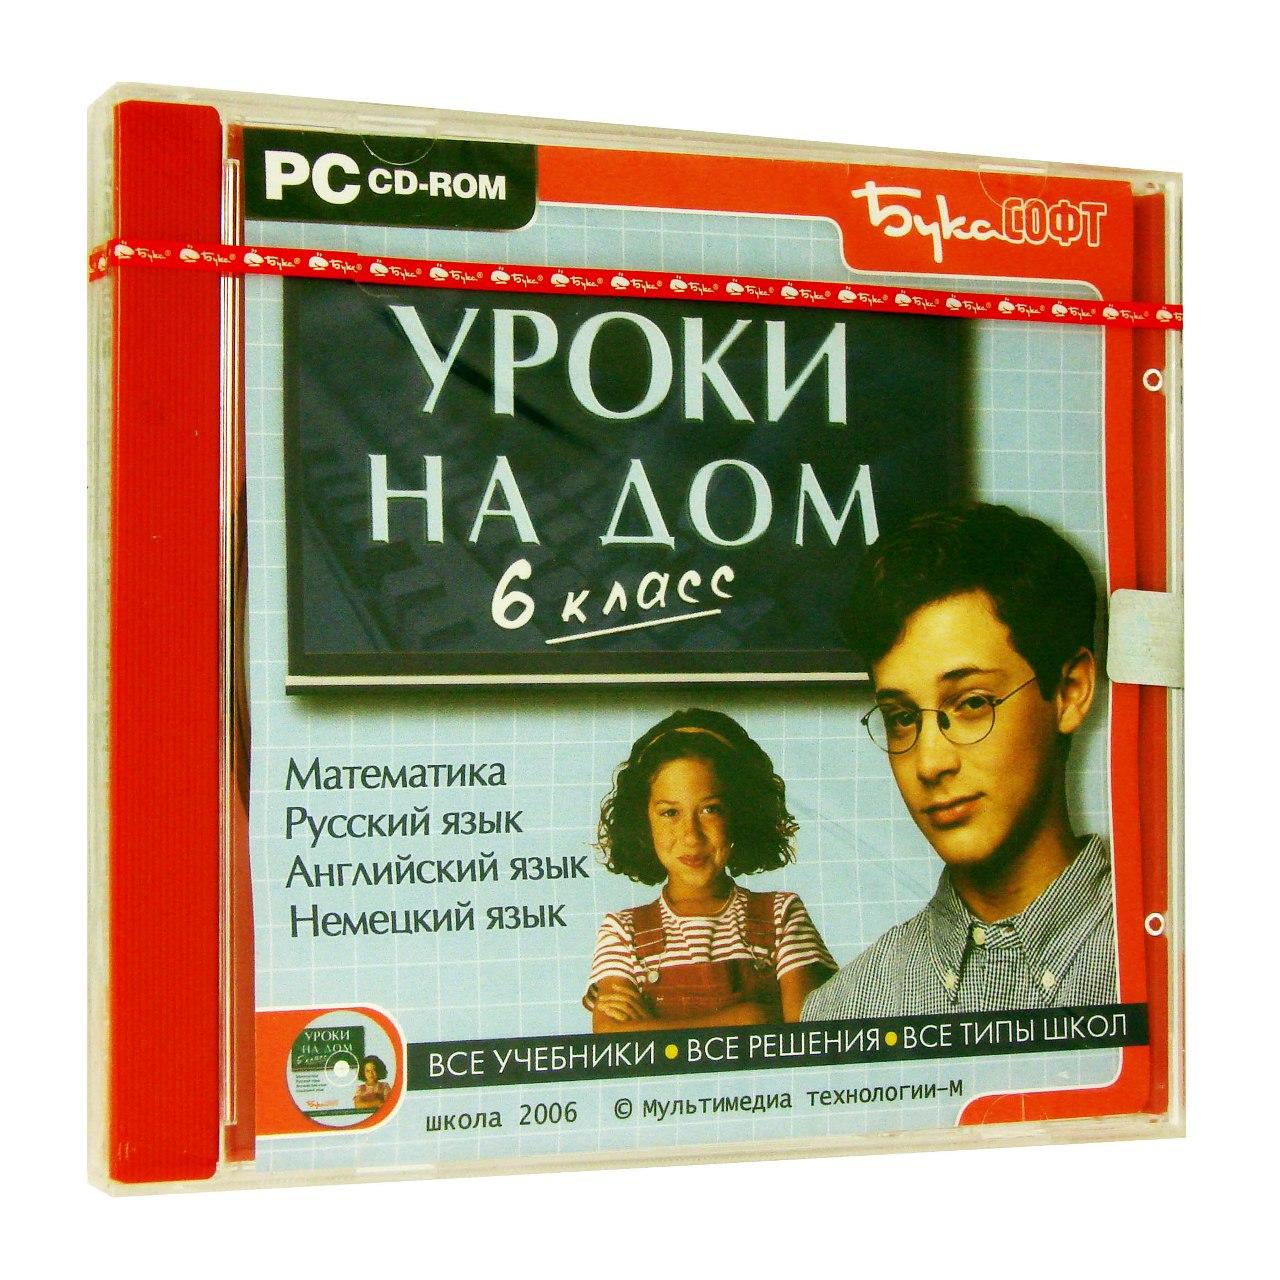 Компьютерный компакт-диск Уроки на дом. 6 класс (ПК), фирма "Бука",  1CD